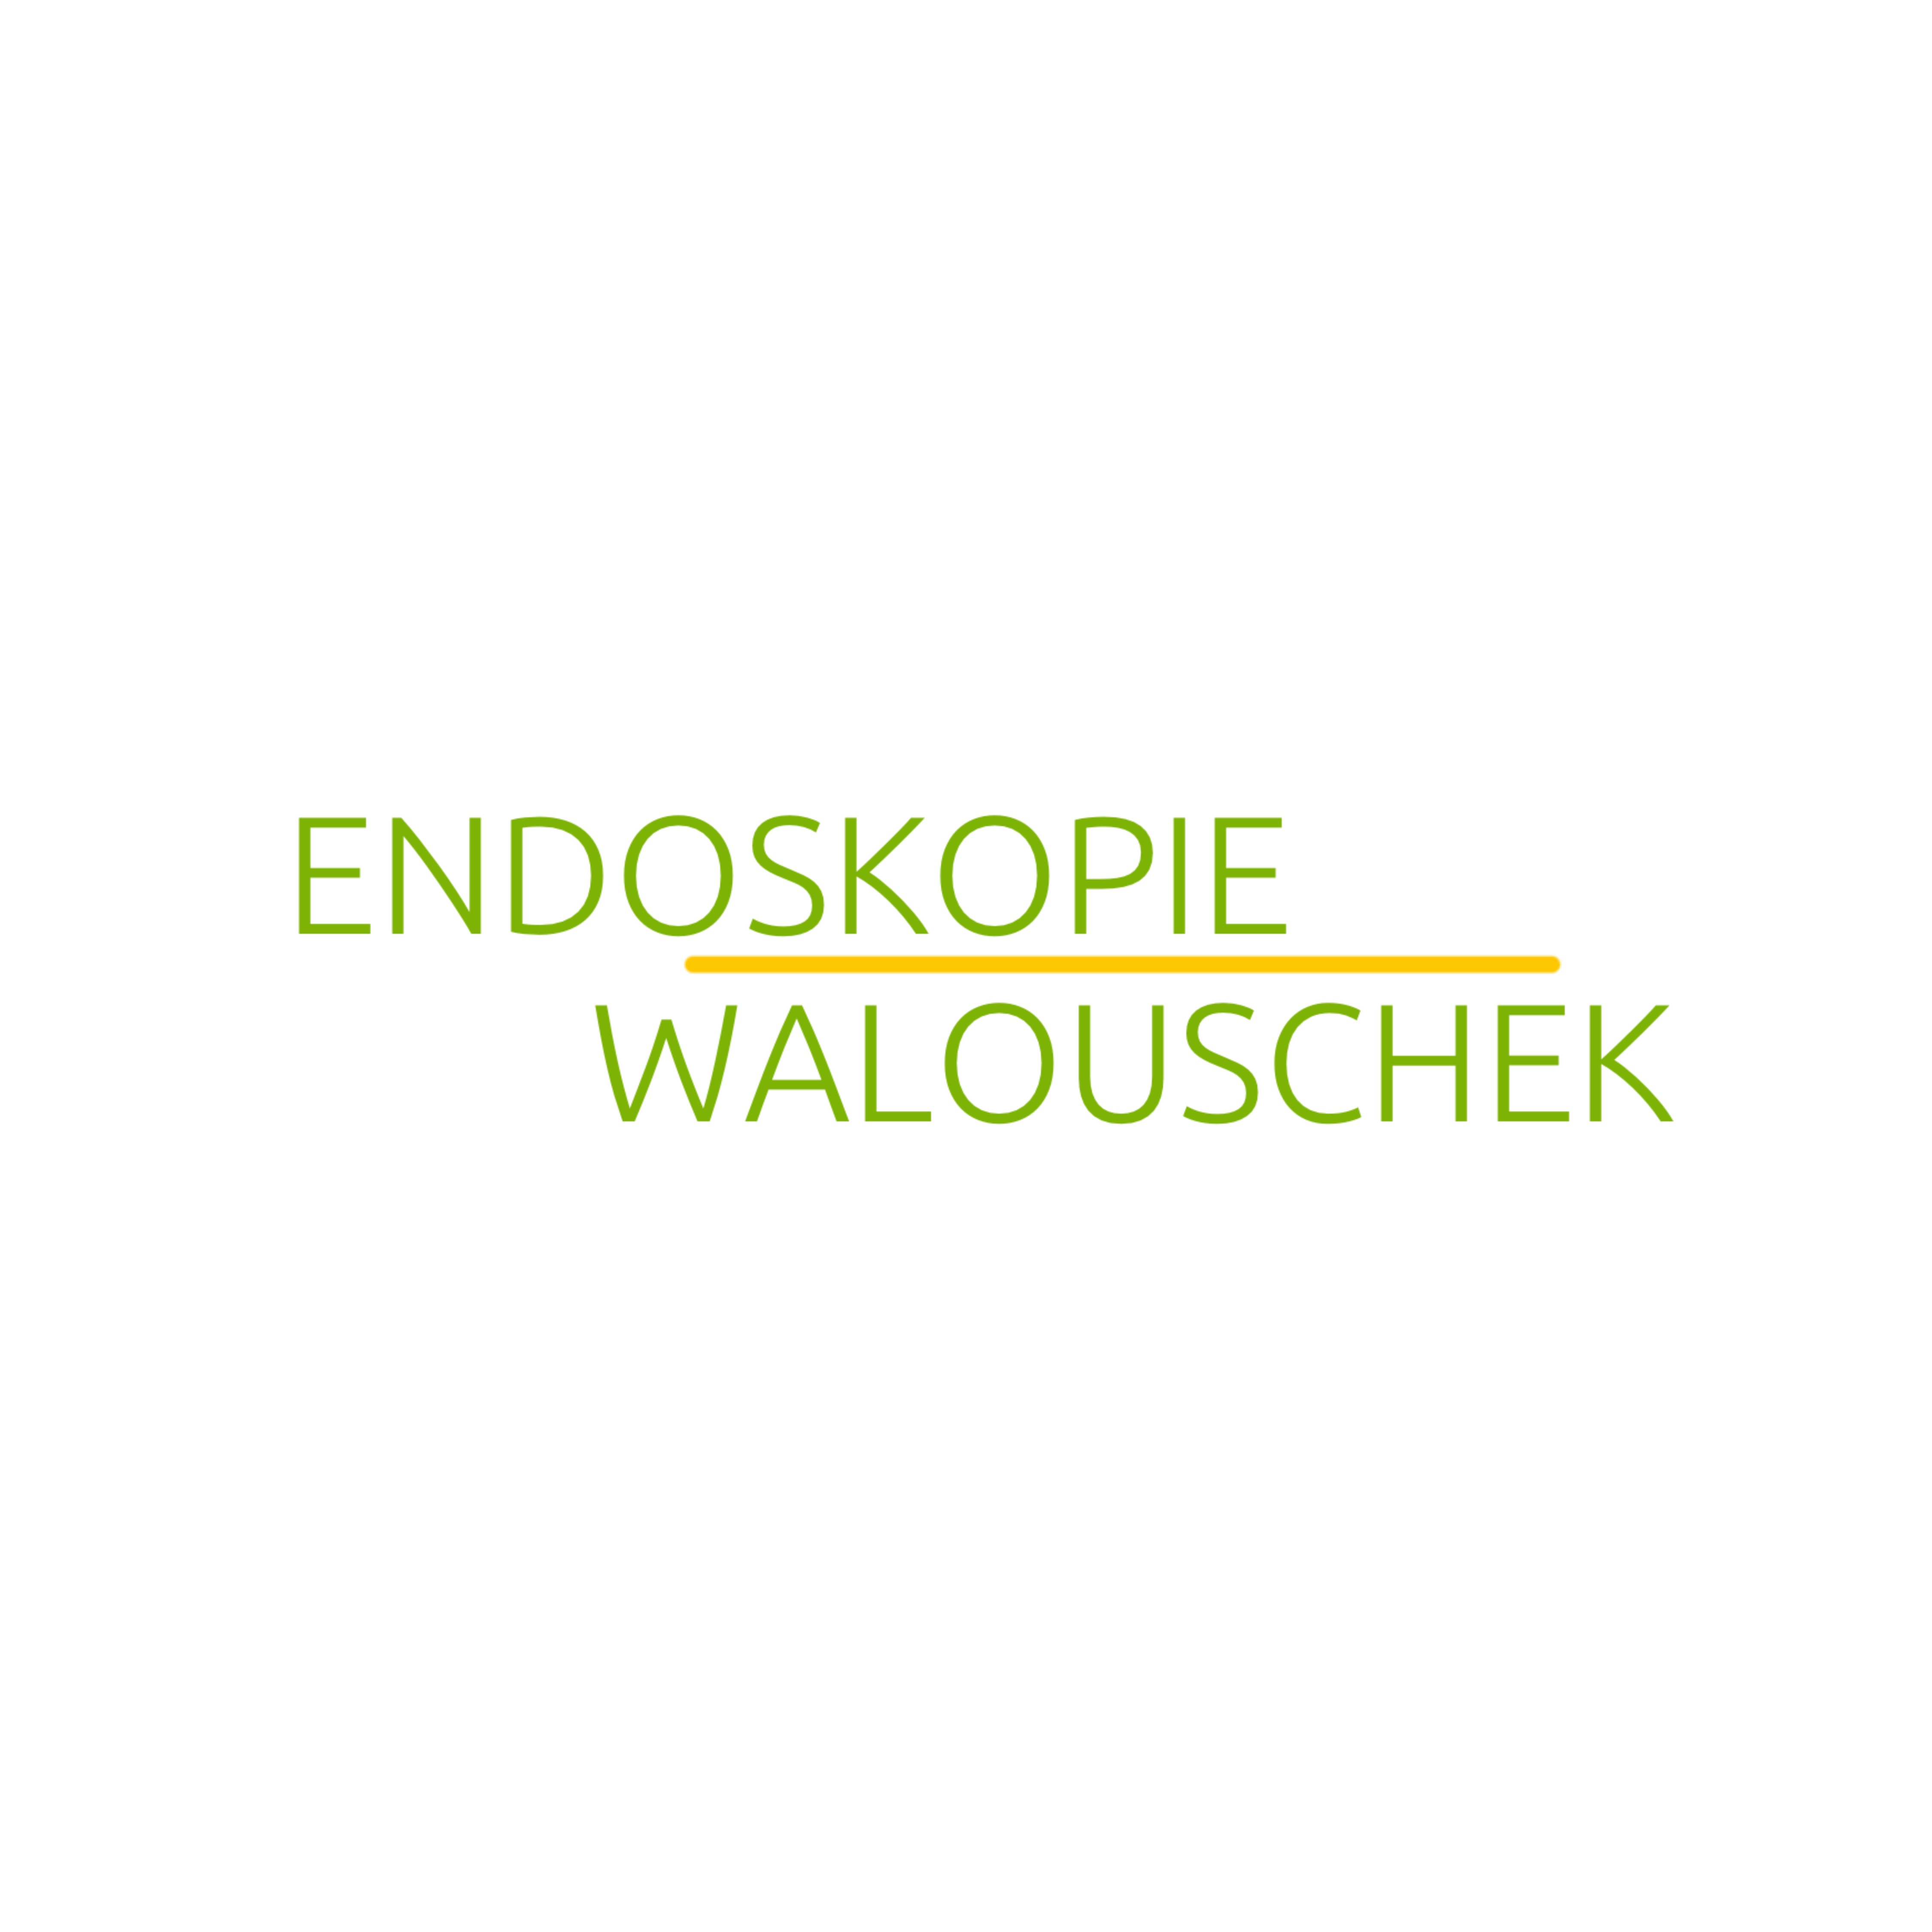 Endoskopie Walouschek 